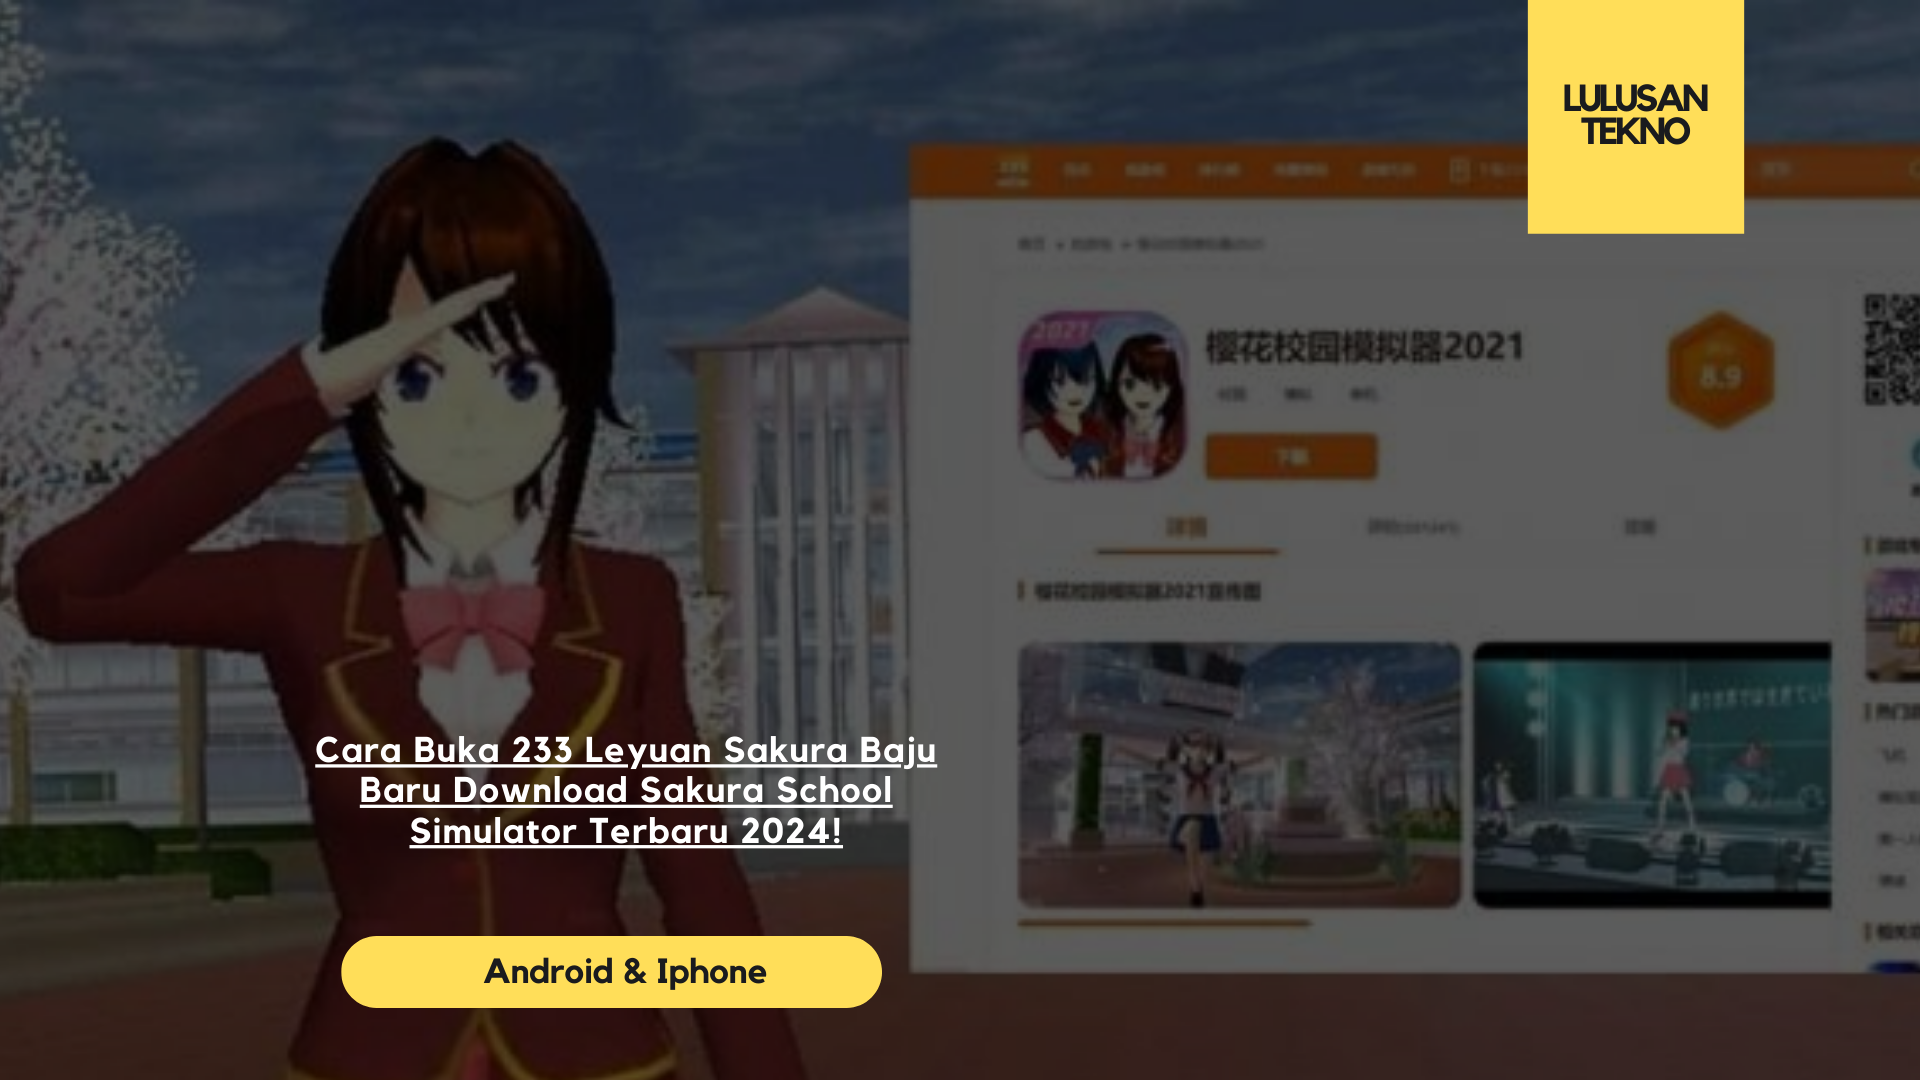 Cara Buka 233 Leyuan Sakura Baju Baru Download Sakura School Simulator Terbaru 2024!